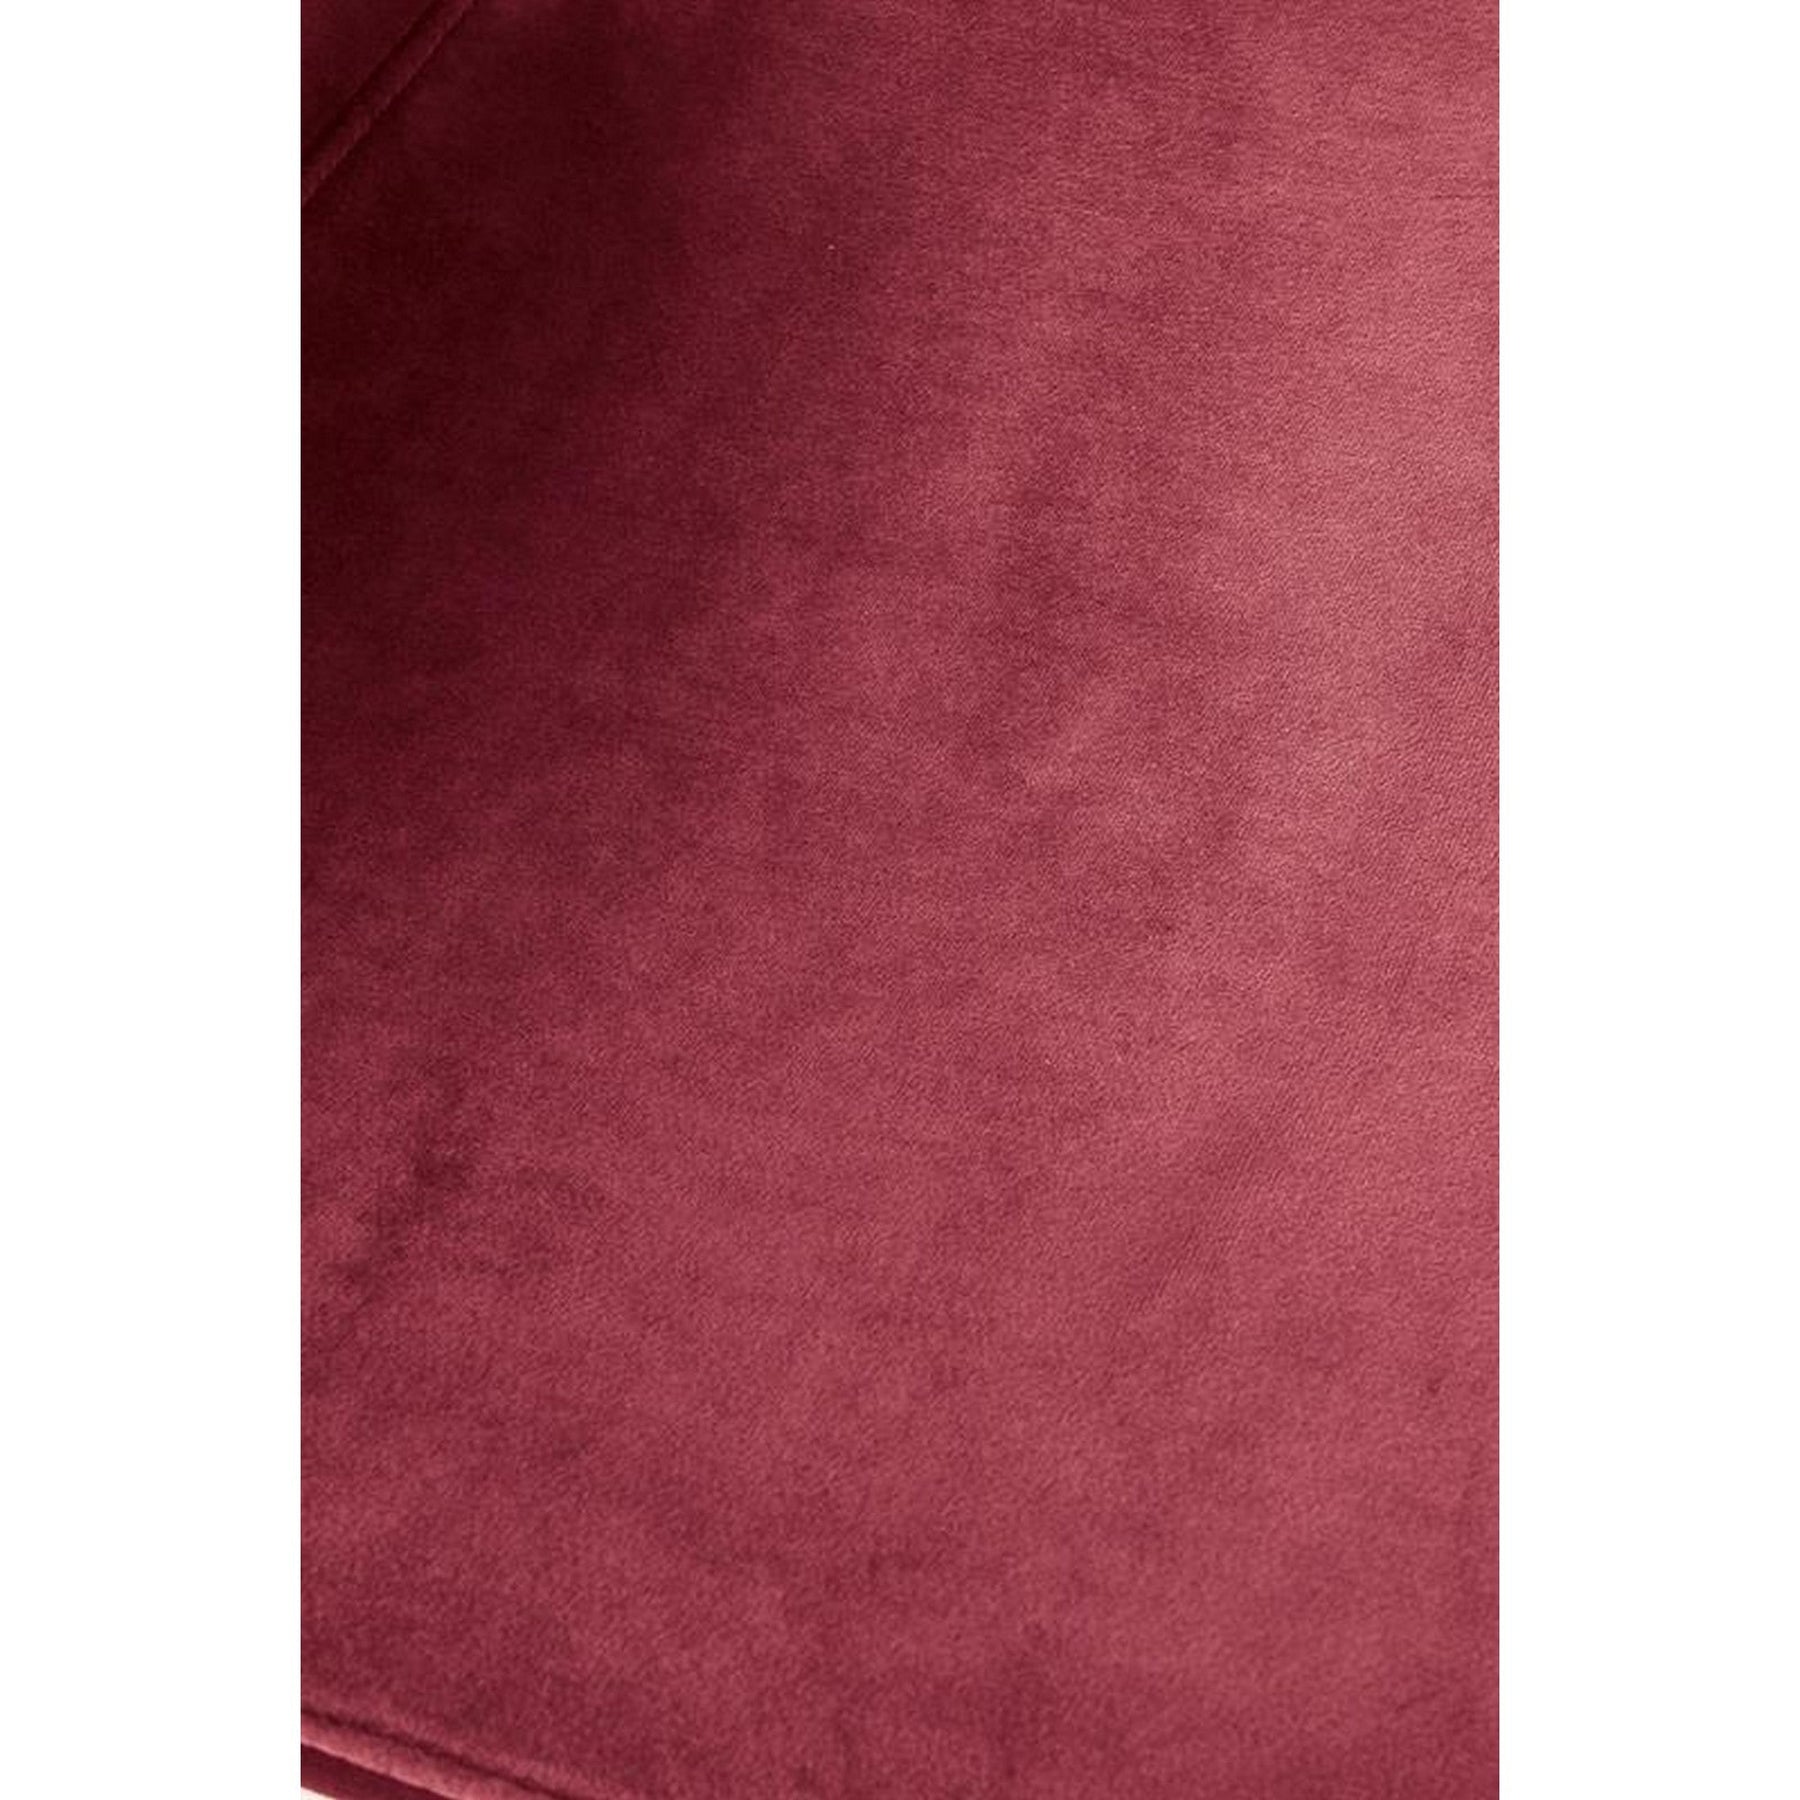 Scaun tapitat K379, rosu, 45x48x88 cm